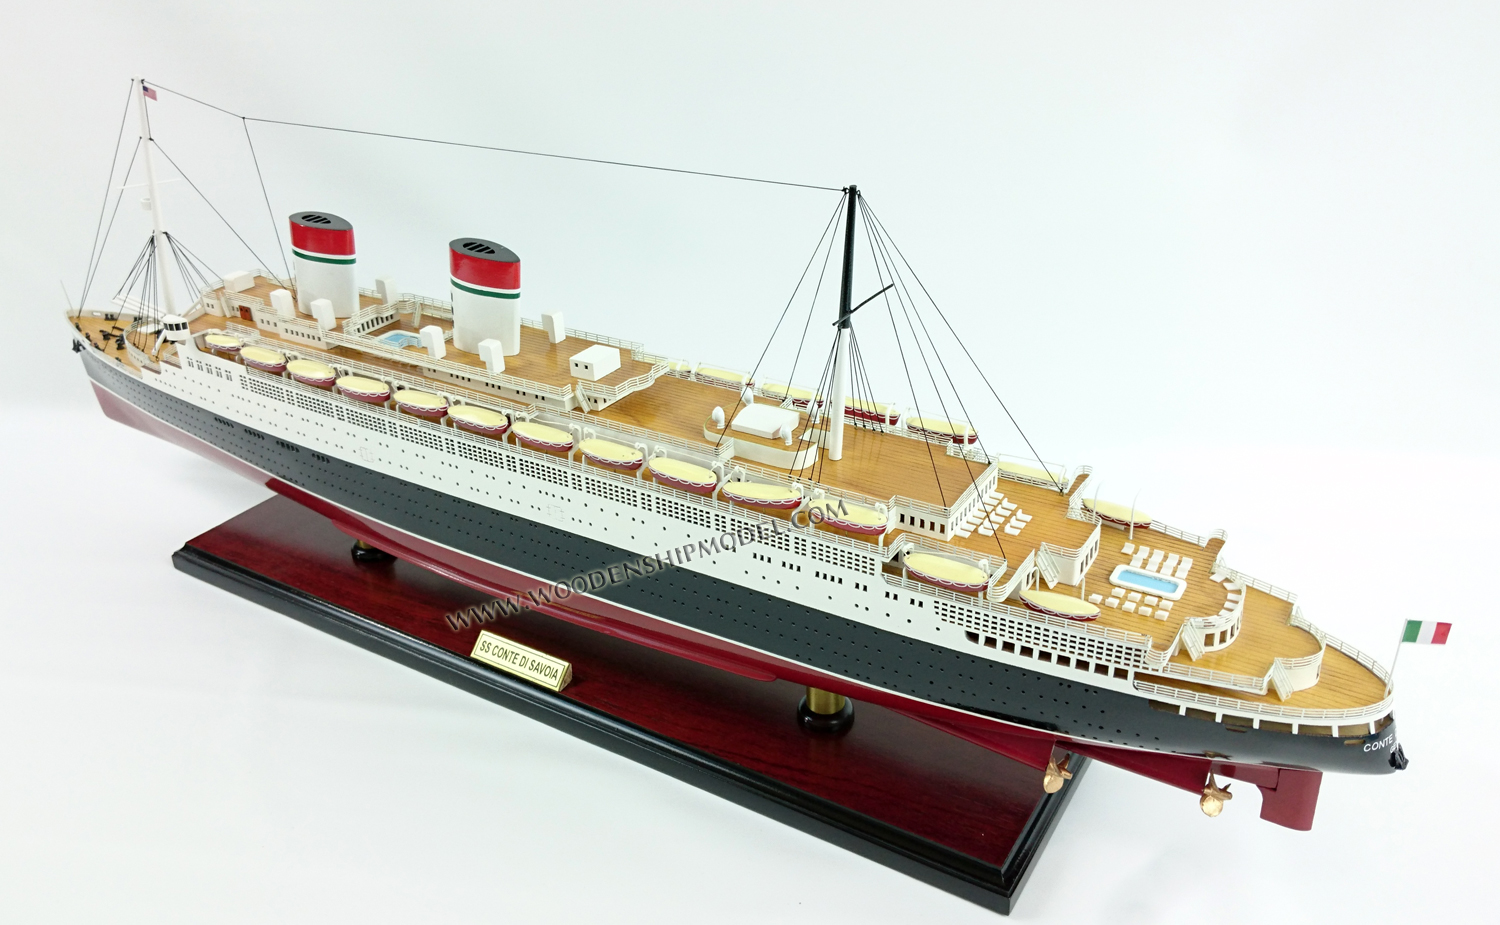 Display passgern ship model SS Conte di Savoia